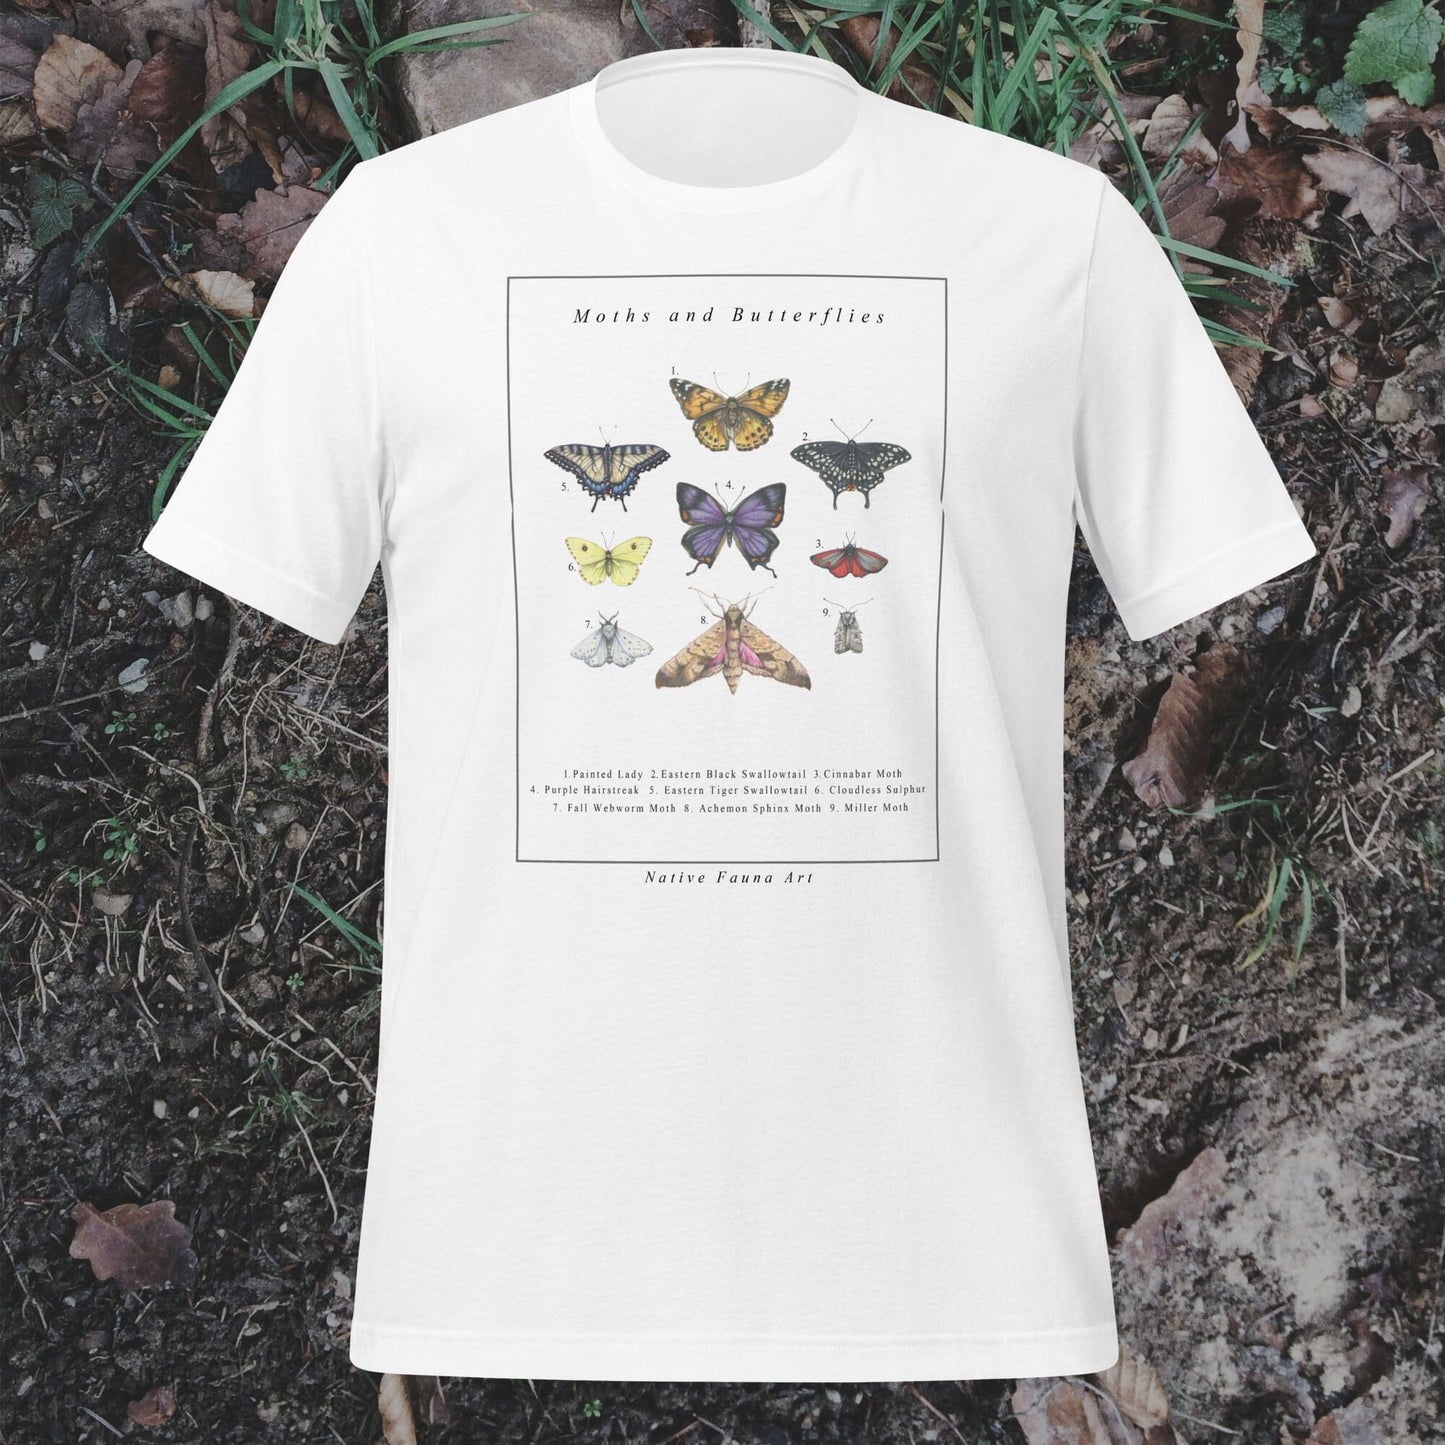 Moths and Butterflies - Unisex t-shirt